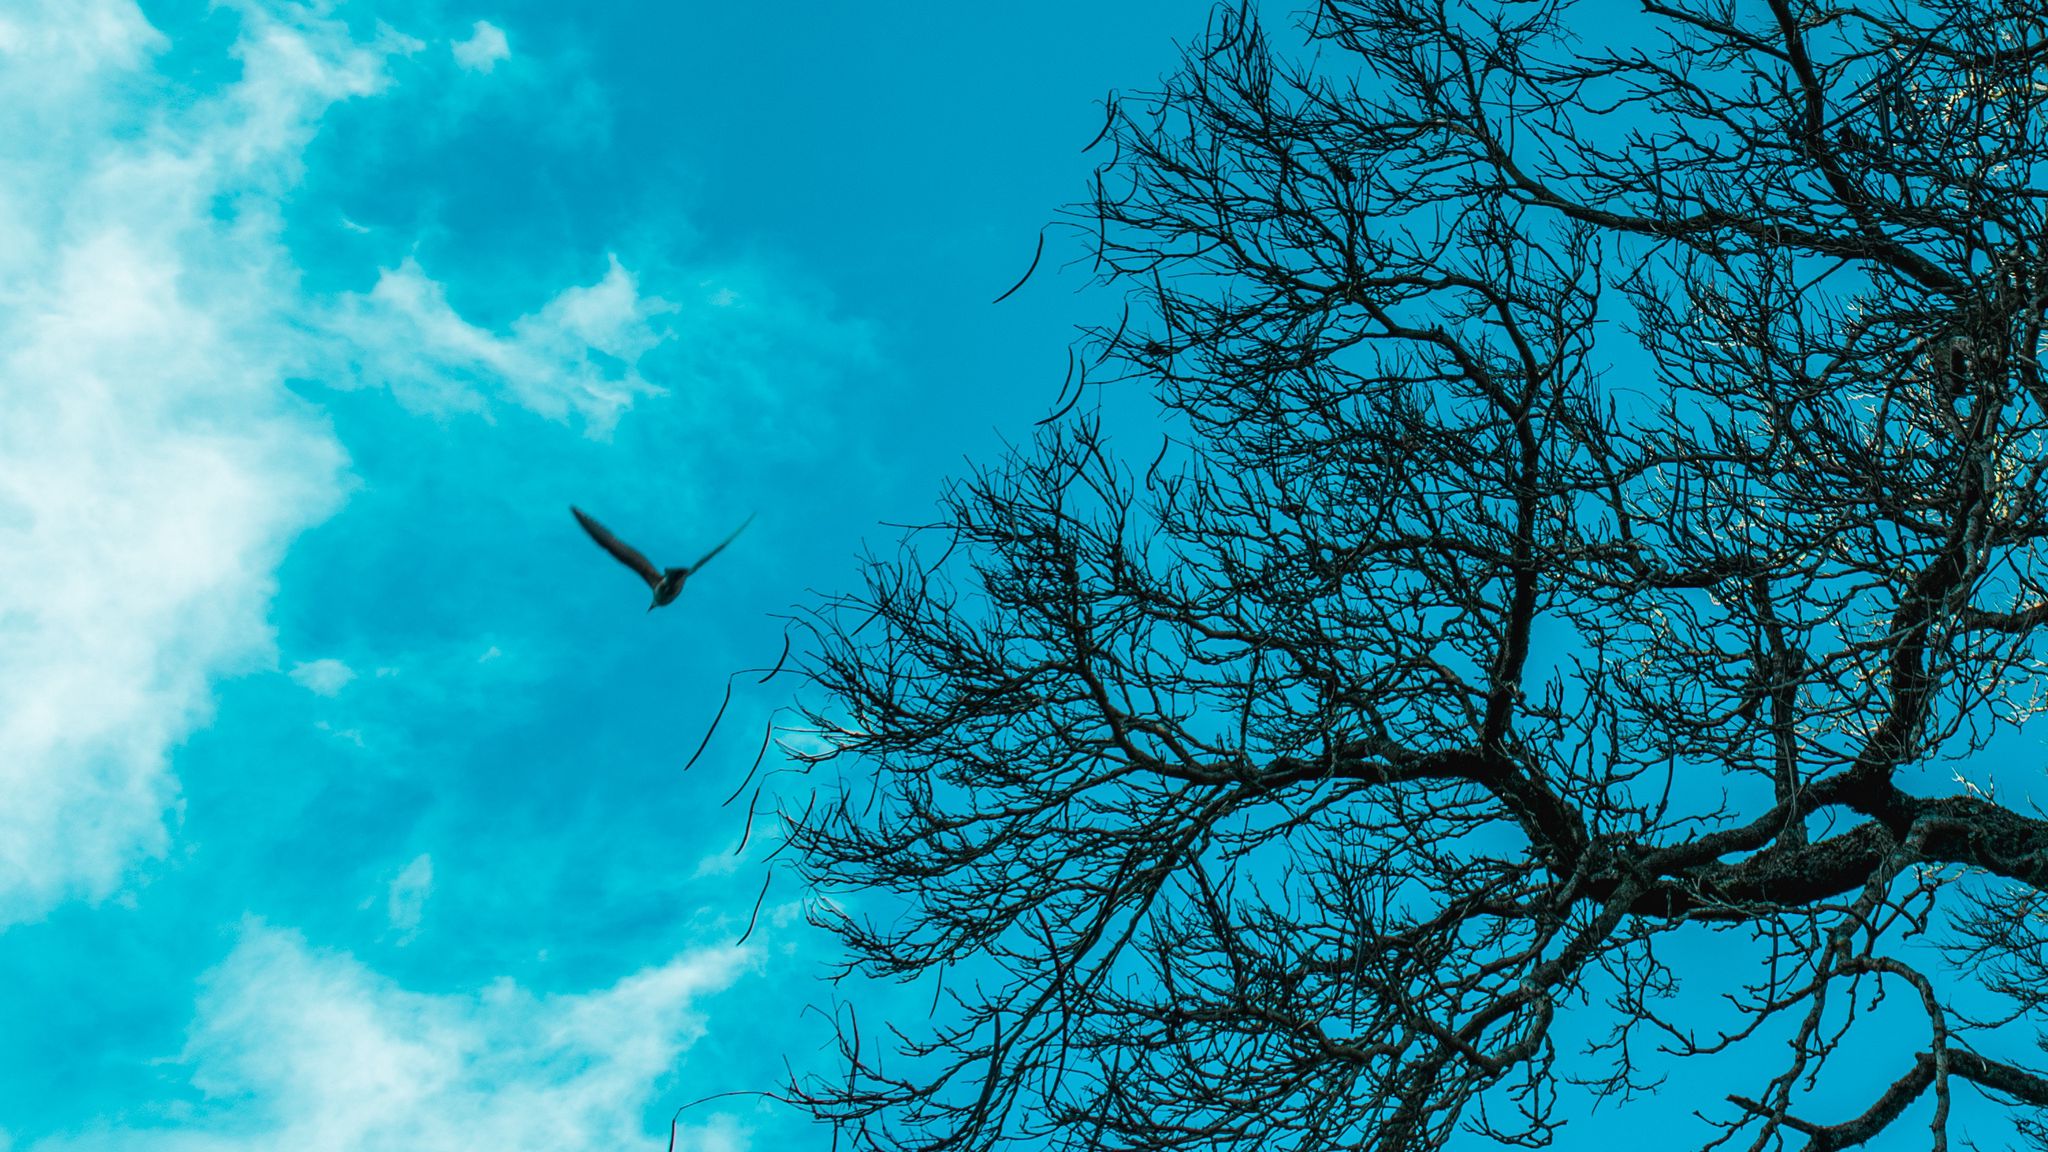 Flying tree. Птицы в небе. Птицы на дереве. Деревья птицы облака. Птица над деревом.